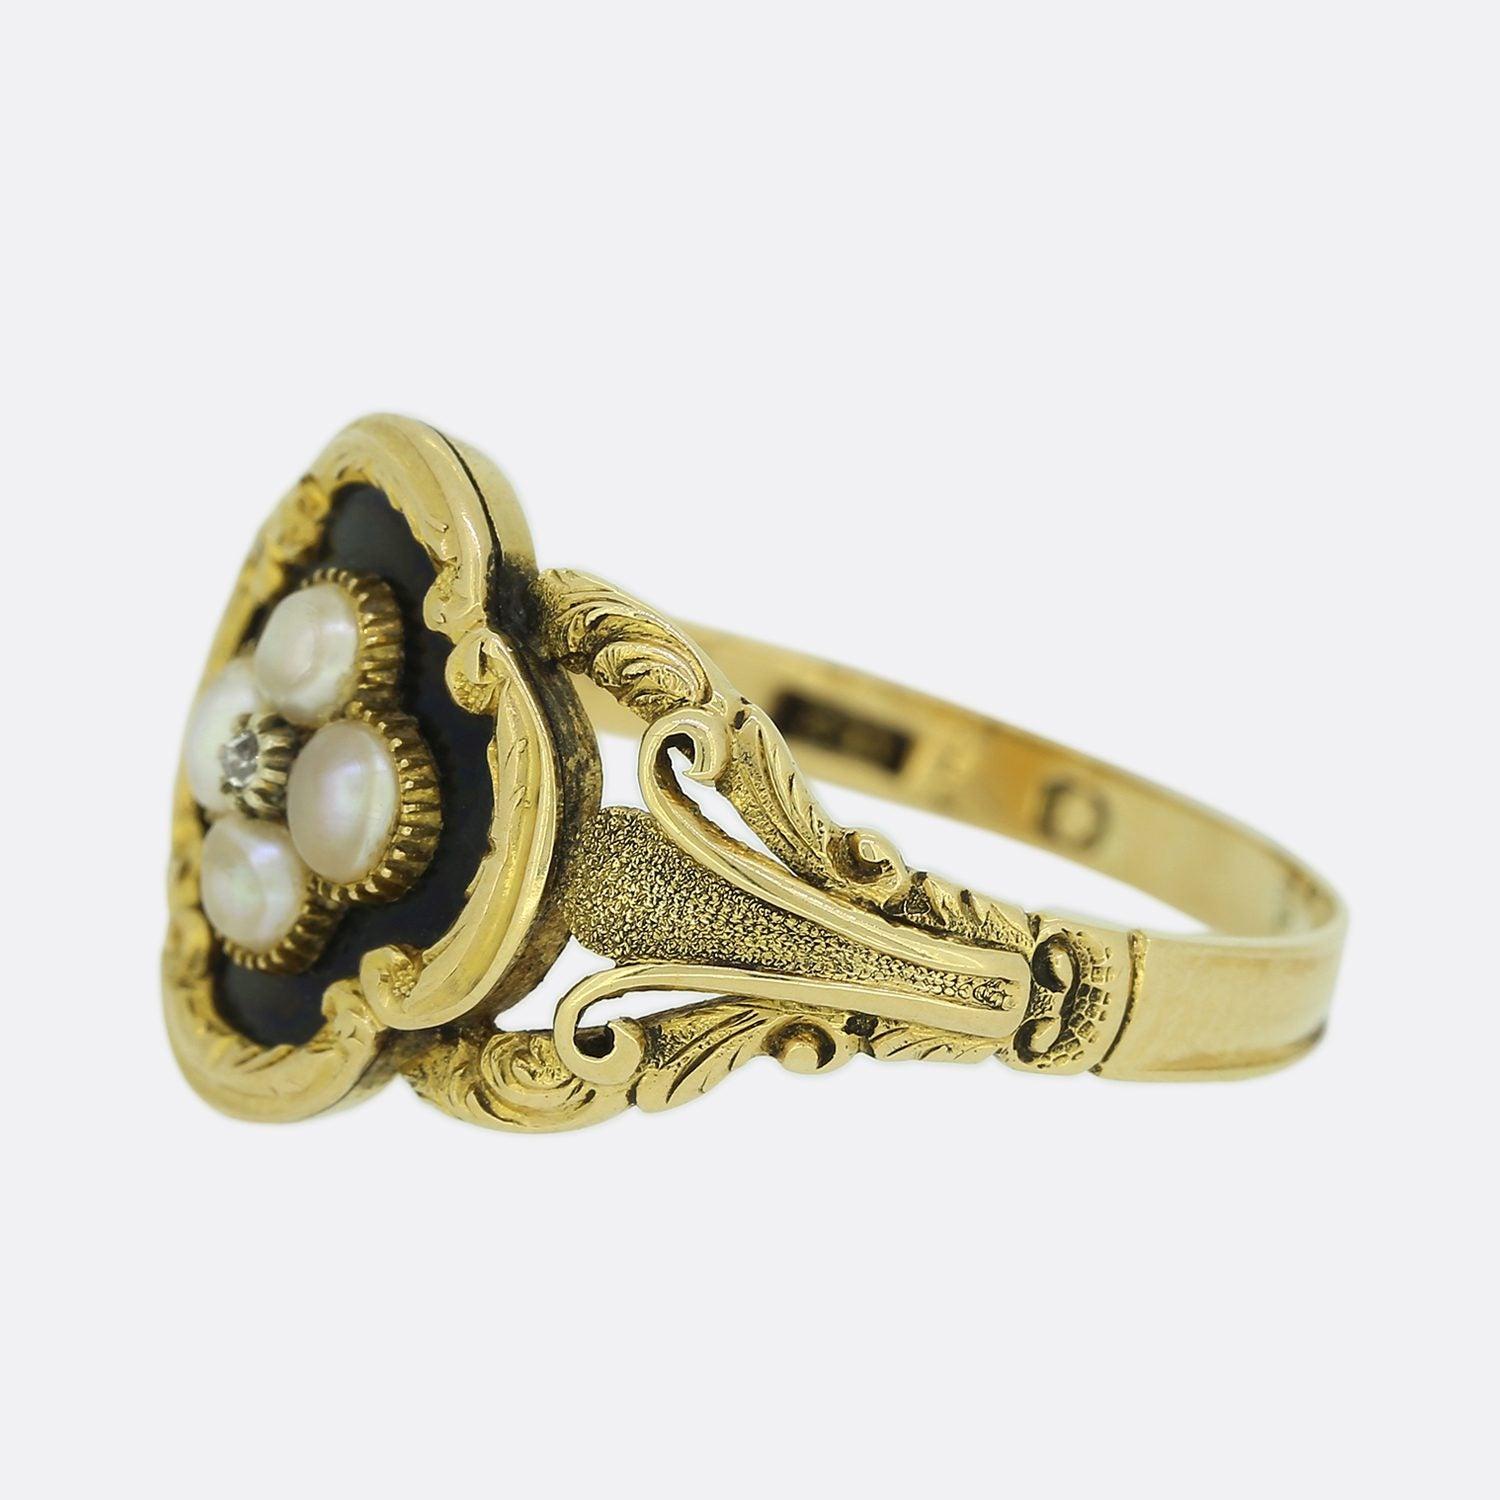 Cet anneau de deuil victorien en or jaune a été merveilleusement réalisé à la main. La bague est sertie d'un diamant central taillé en rose dans une monture à collet taillé et est entourée de quatre perles naturelles originales dans une face en